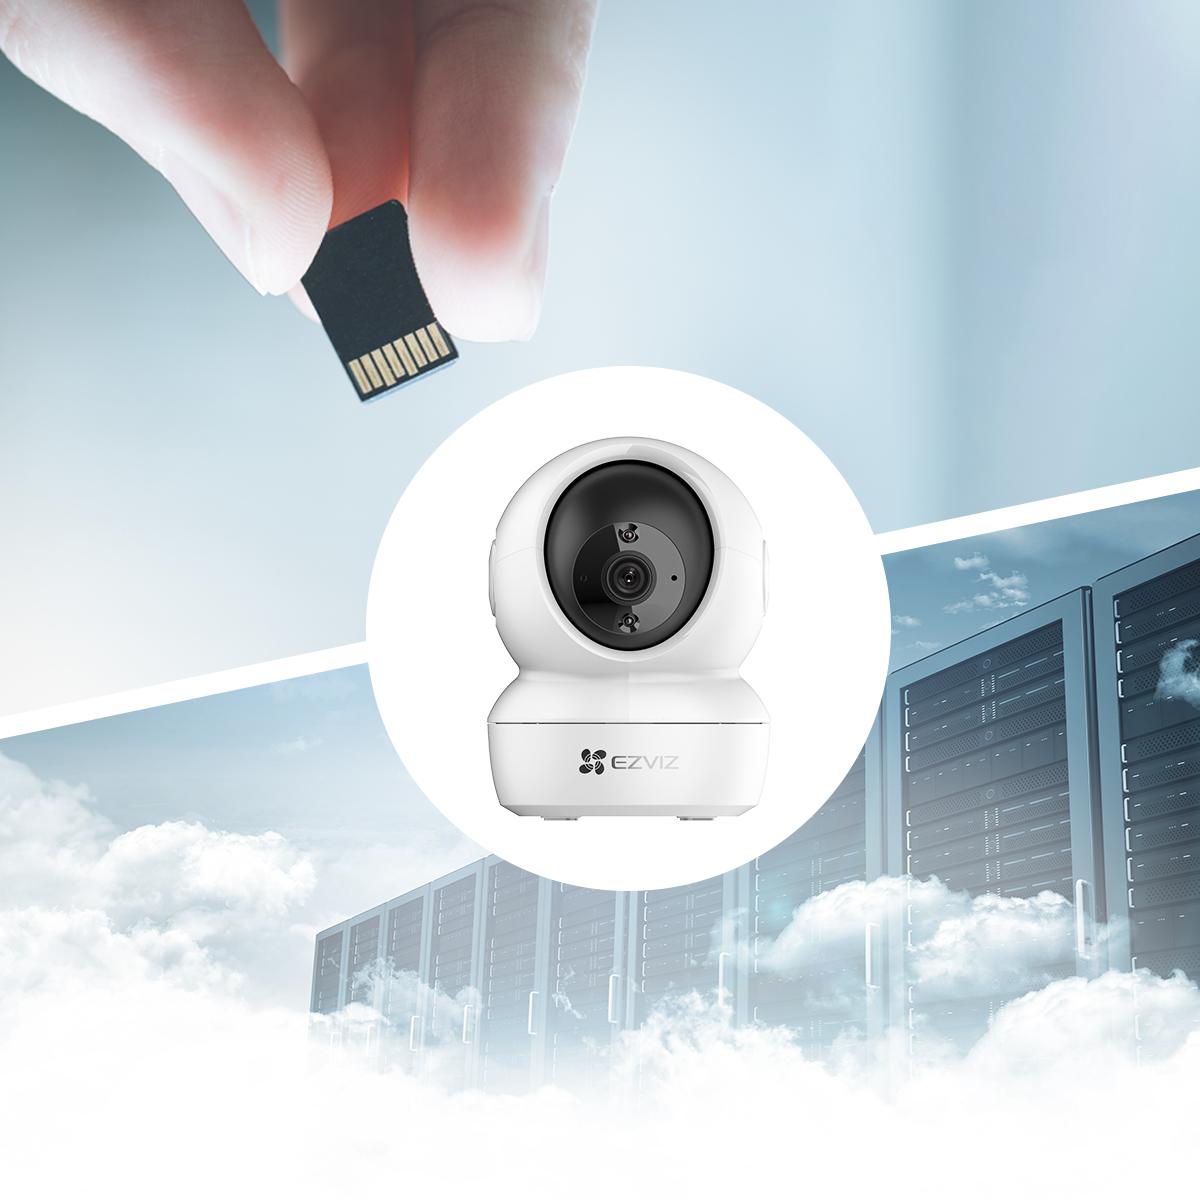 Zamień kamerę monitorującą Wi-Fi EZVIZ H6c 2K+ w Twój cyfrowy pamiętnik zawierający wszystkie niezapomniane i ważne momenty!